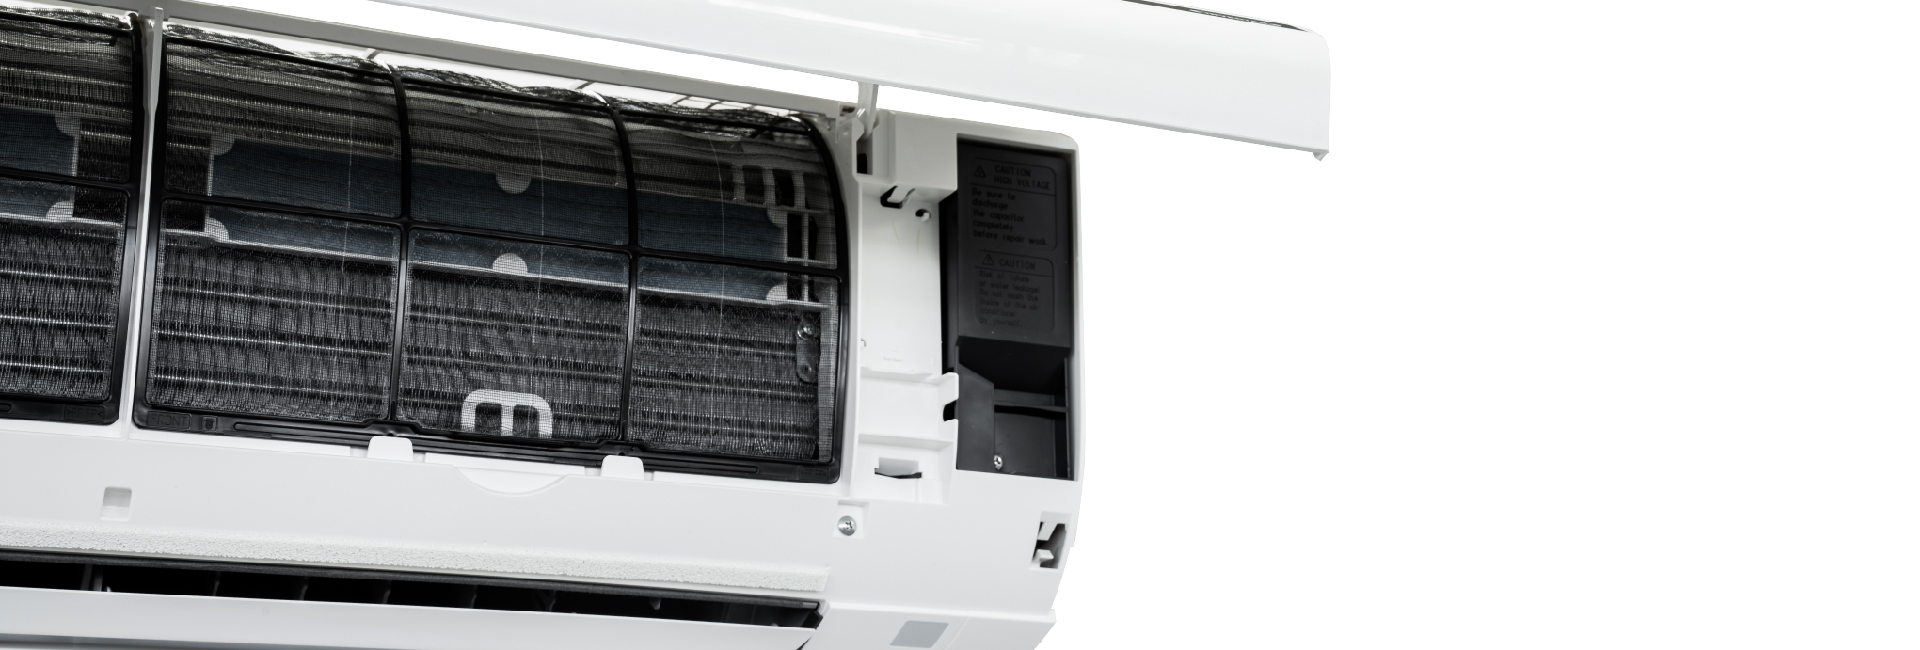 Máy lạnh Daikin Inverter 1.0 HP FTKB25XVMV - Hàng chính hãng - Giao HCM và 1 số tỉnh thành